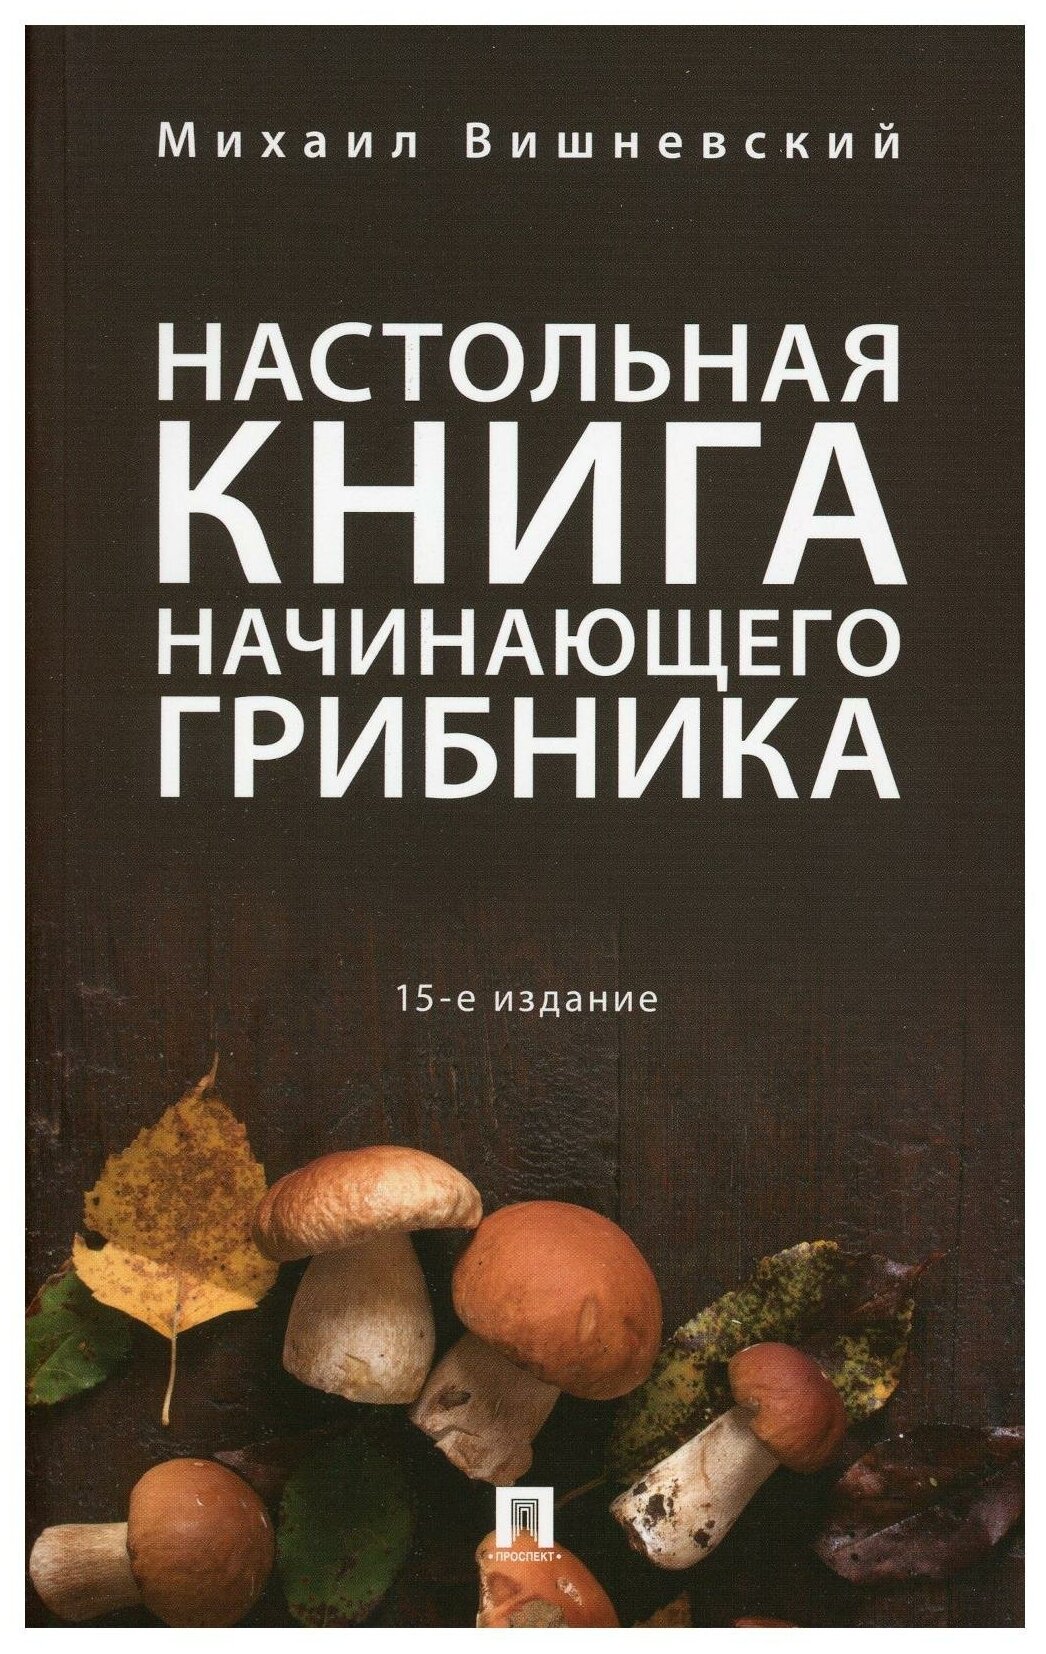 Настольная книга начинающего грибника - фото №1